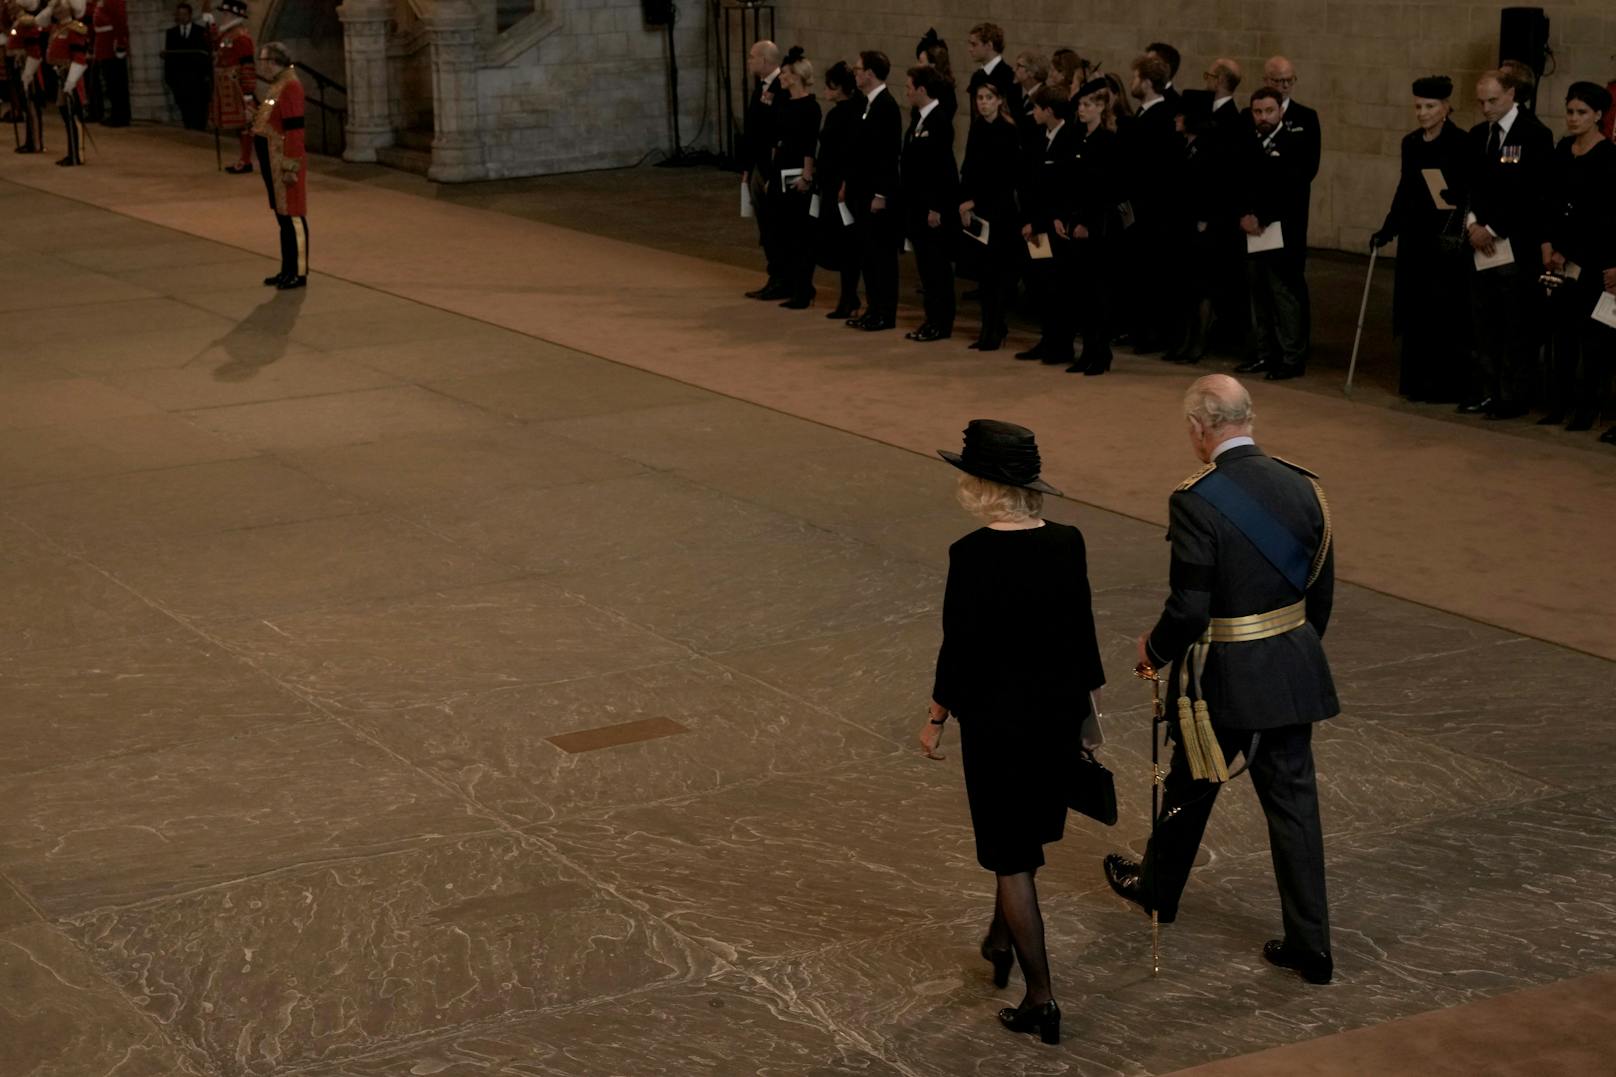 König Karl III. und Camilla, die Königingemahlin, kommen am Mittwoch, den 14. September 2022, in der Westminster Hall in London an.